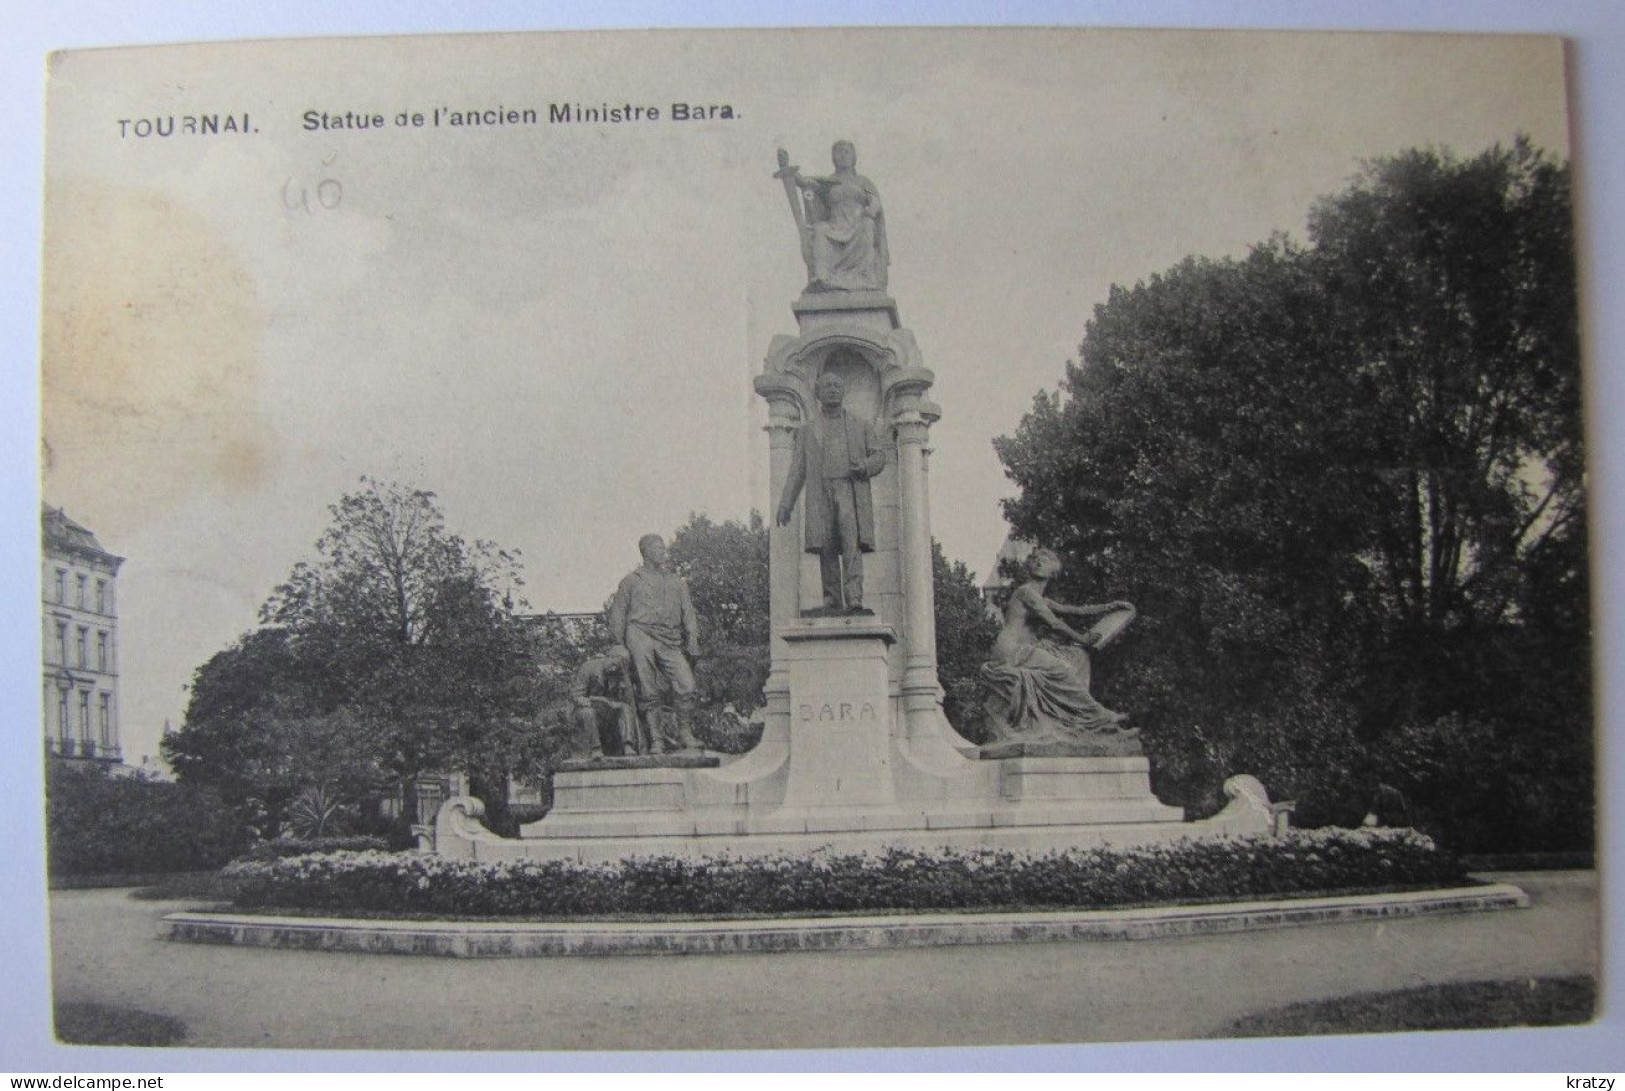 BELGIQUE - HAINAUT - TOURNAI - Statue De L'Ancien Ministre Bara - 1920 - Tournai